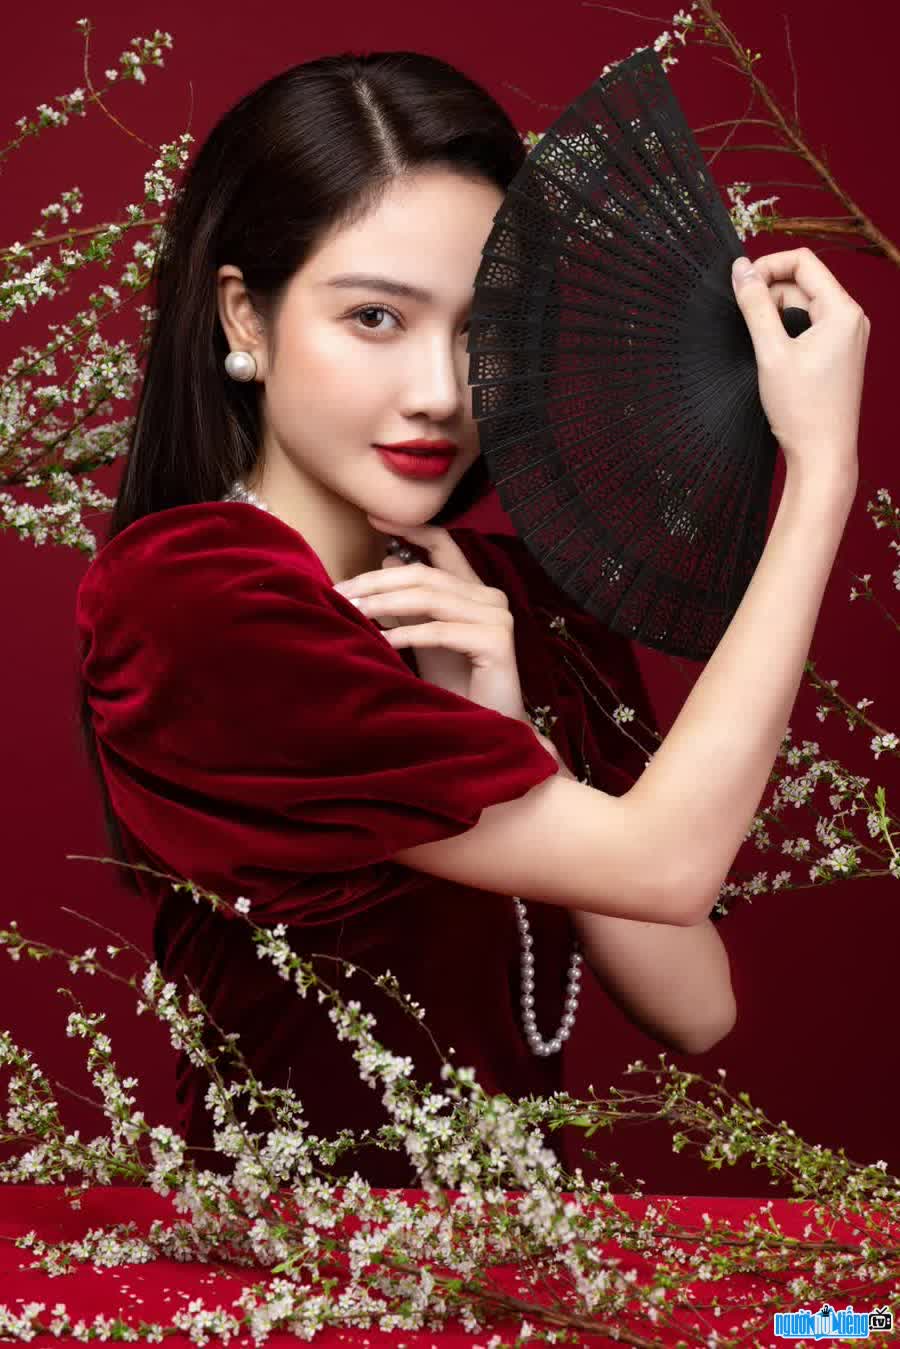 Latest image of people model Bi Nguyen